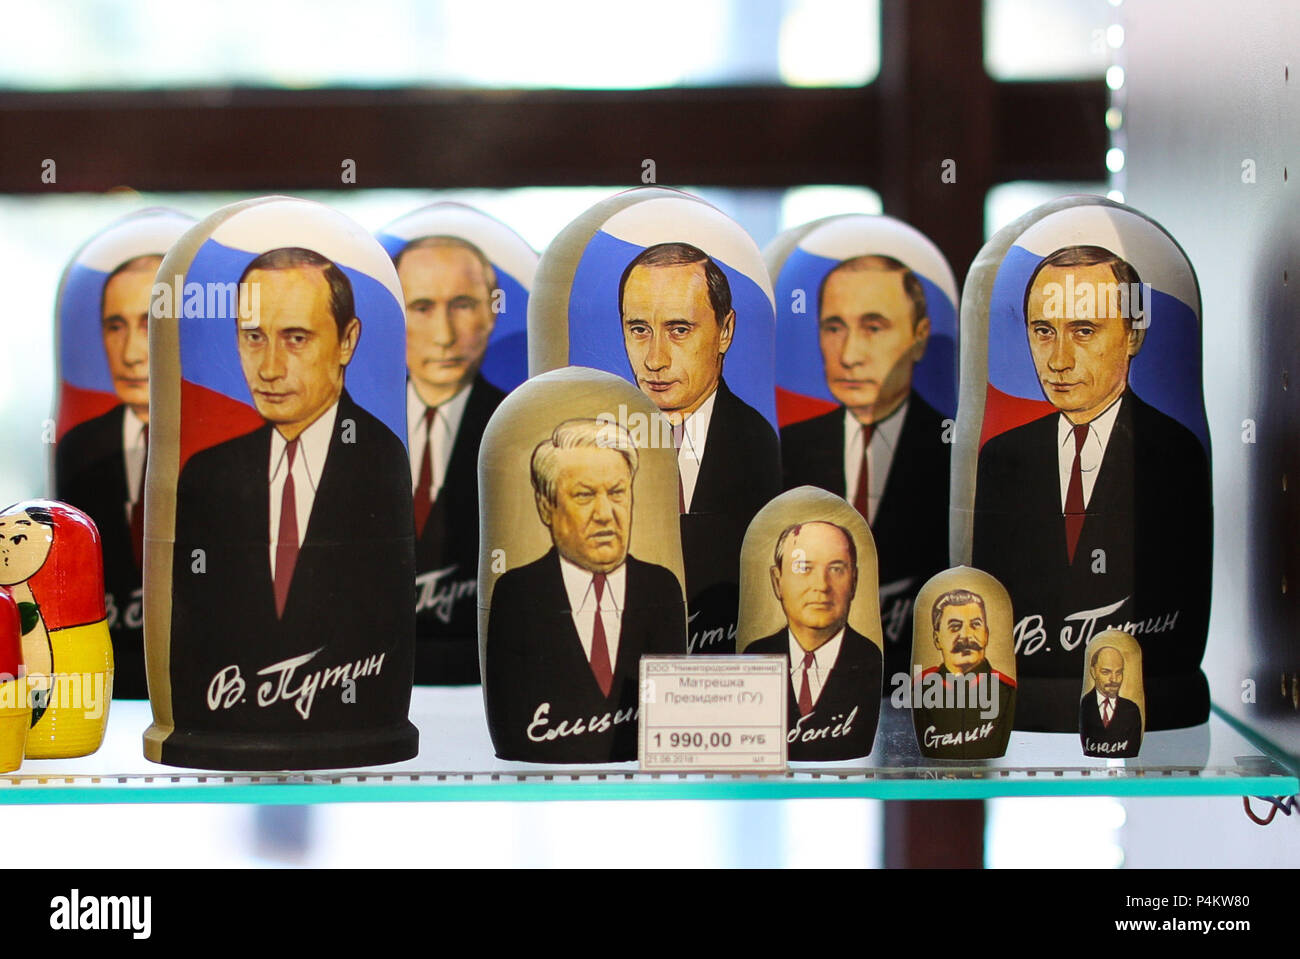 Der russische Präsident Wladimir Putin matrjoschka Puppen für Verkauf in einem Souvenirshop im Zentrum von Nischni Nowgorod, Russland, während der FIFA WM 2018. Stockfoto